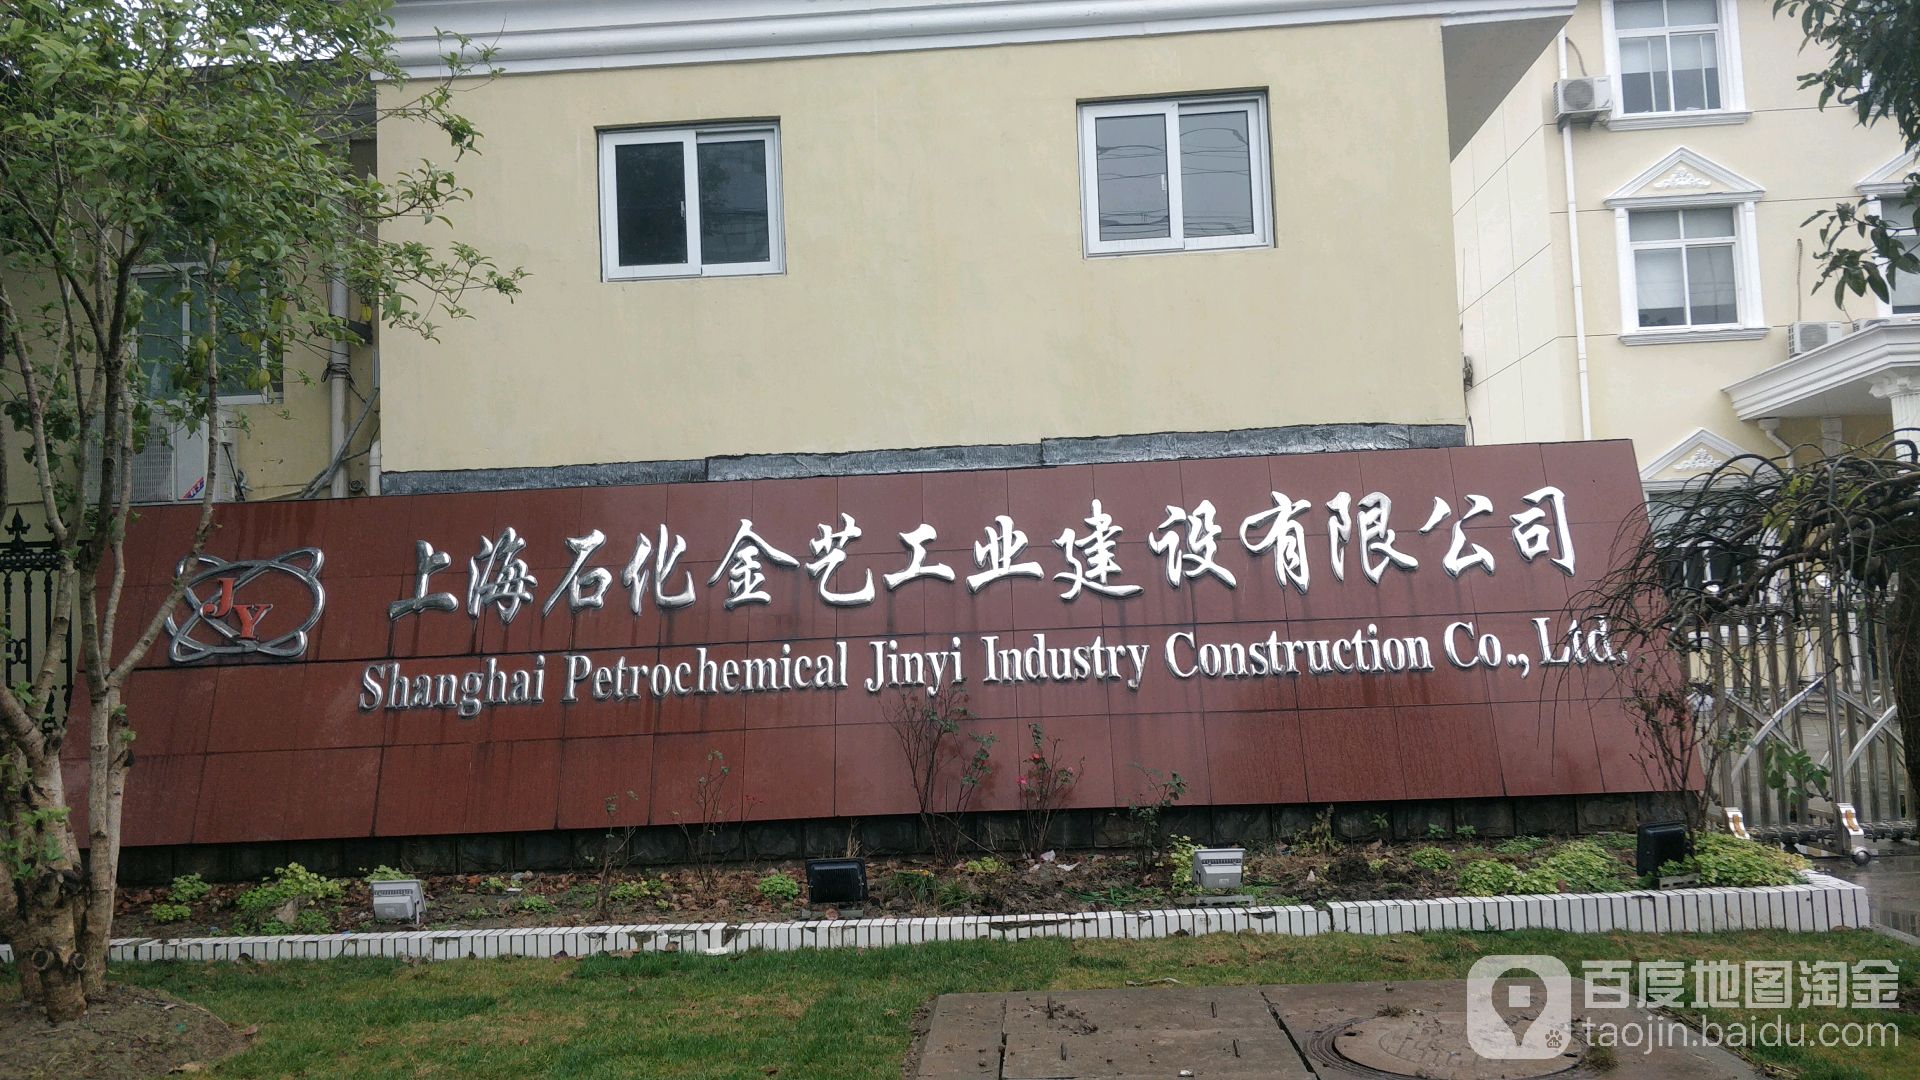 上海石化金藝工業建設有限公司